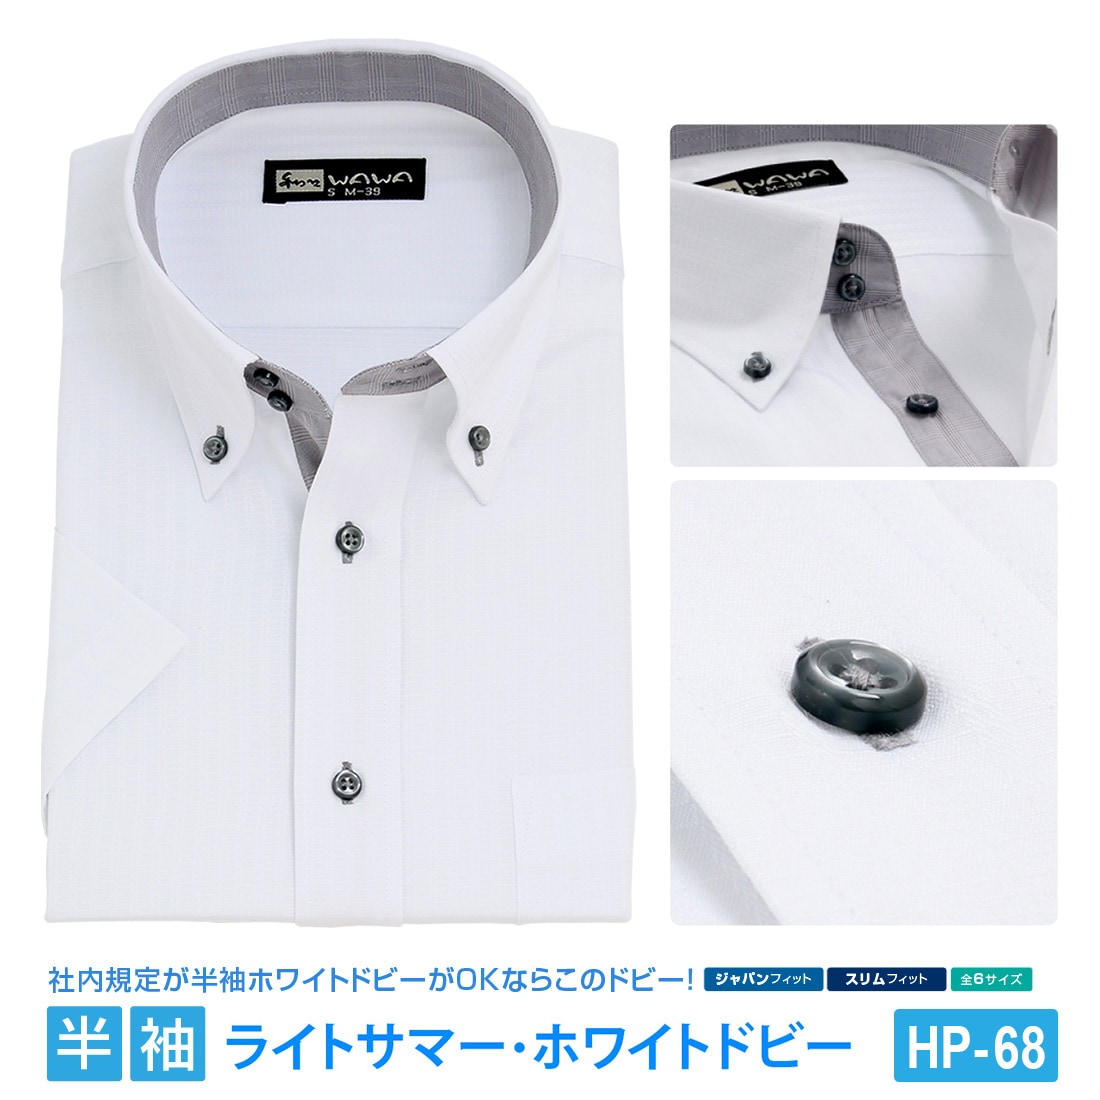 半袖ワイシャツ 半袖 メンズ ドビー ホワイト ワイシャツ ボタンダウン ドウェ 形態安定 白 Yシャツ ビジネス 6サイズ スリム M L 標準体  M L LL 3L から選べる HP-68-WAWAJAPAN